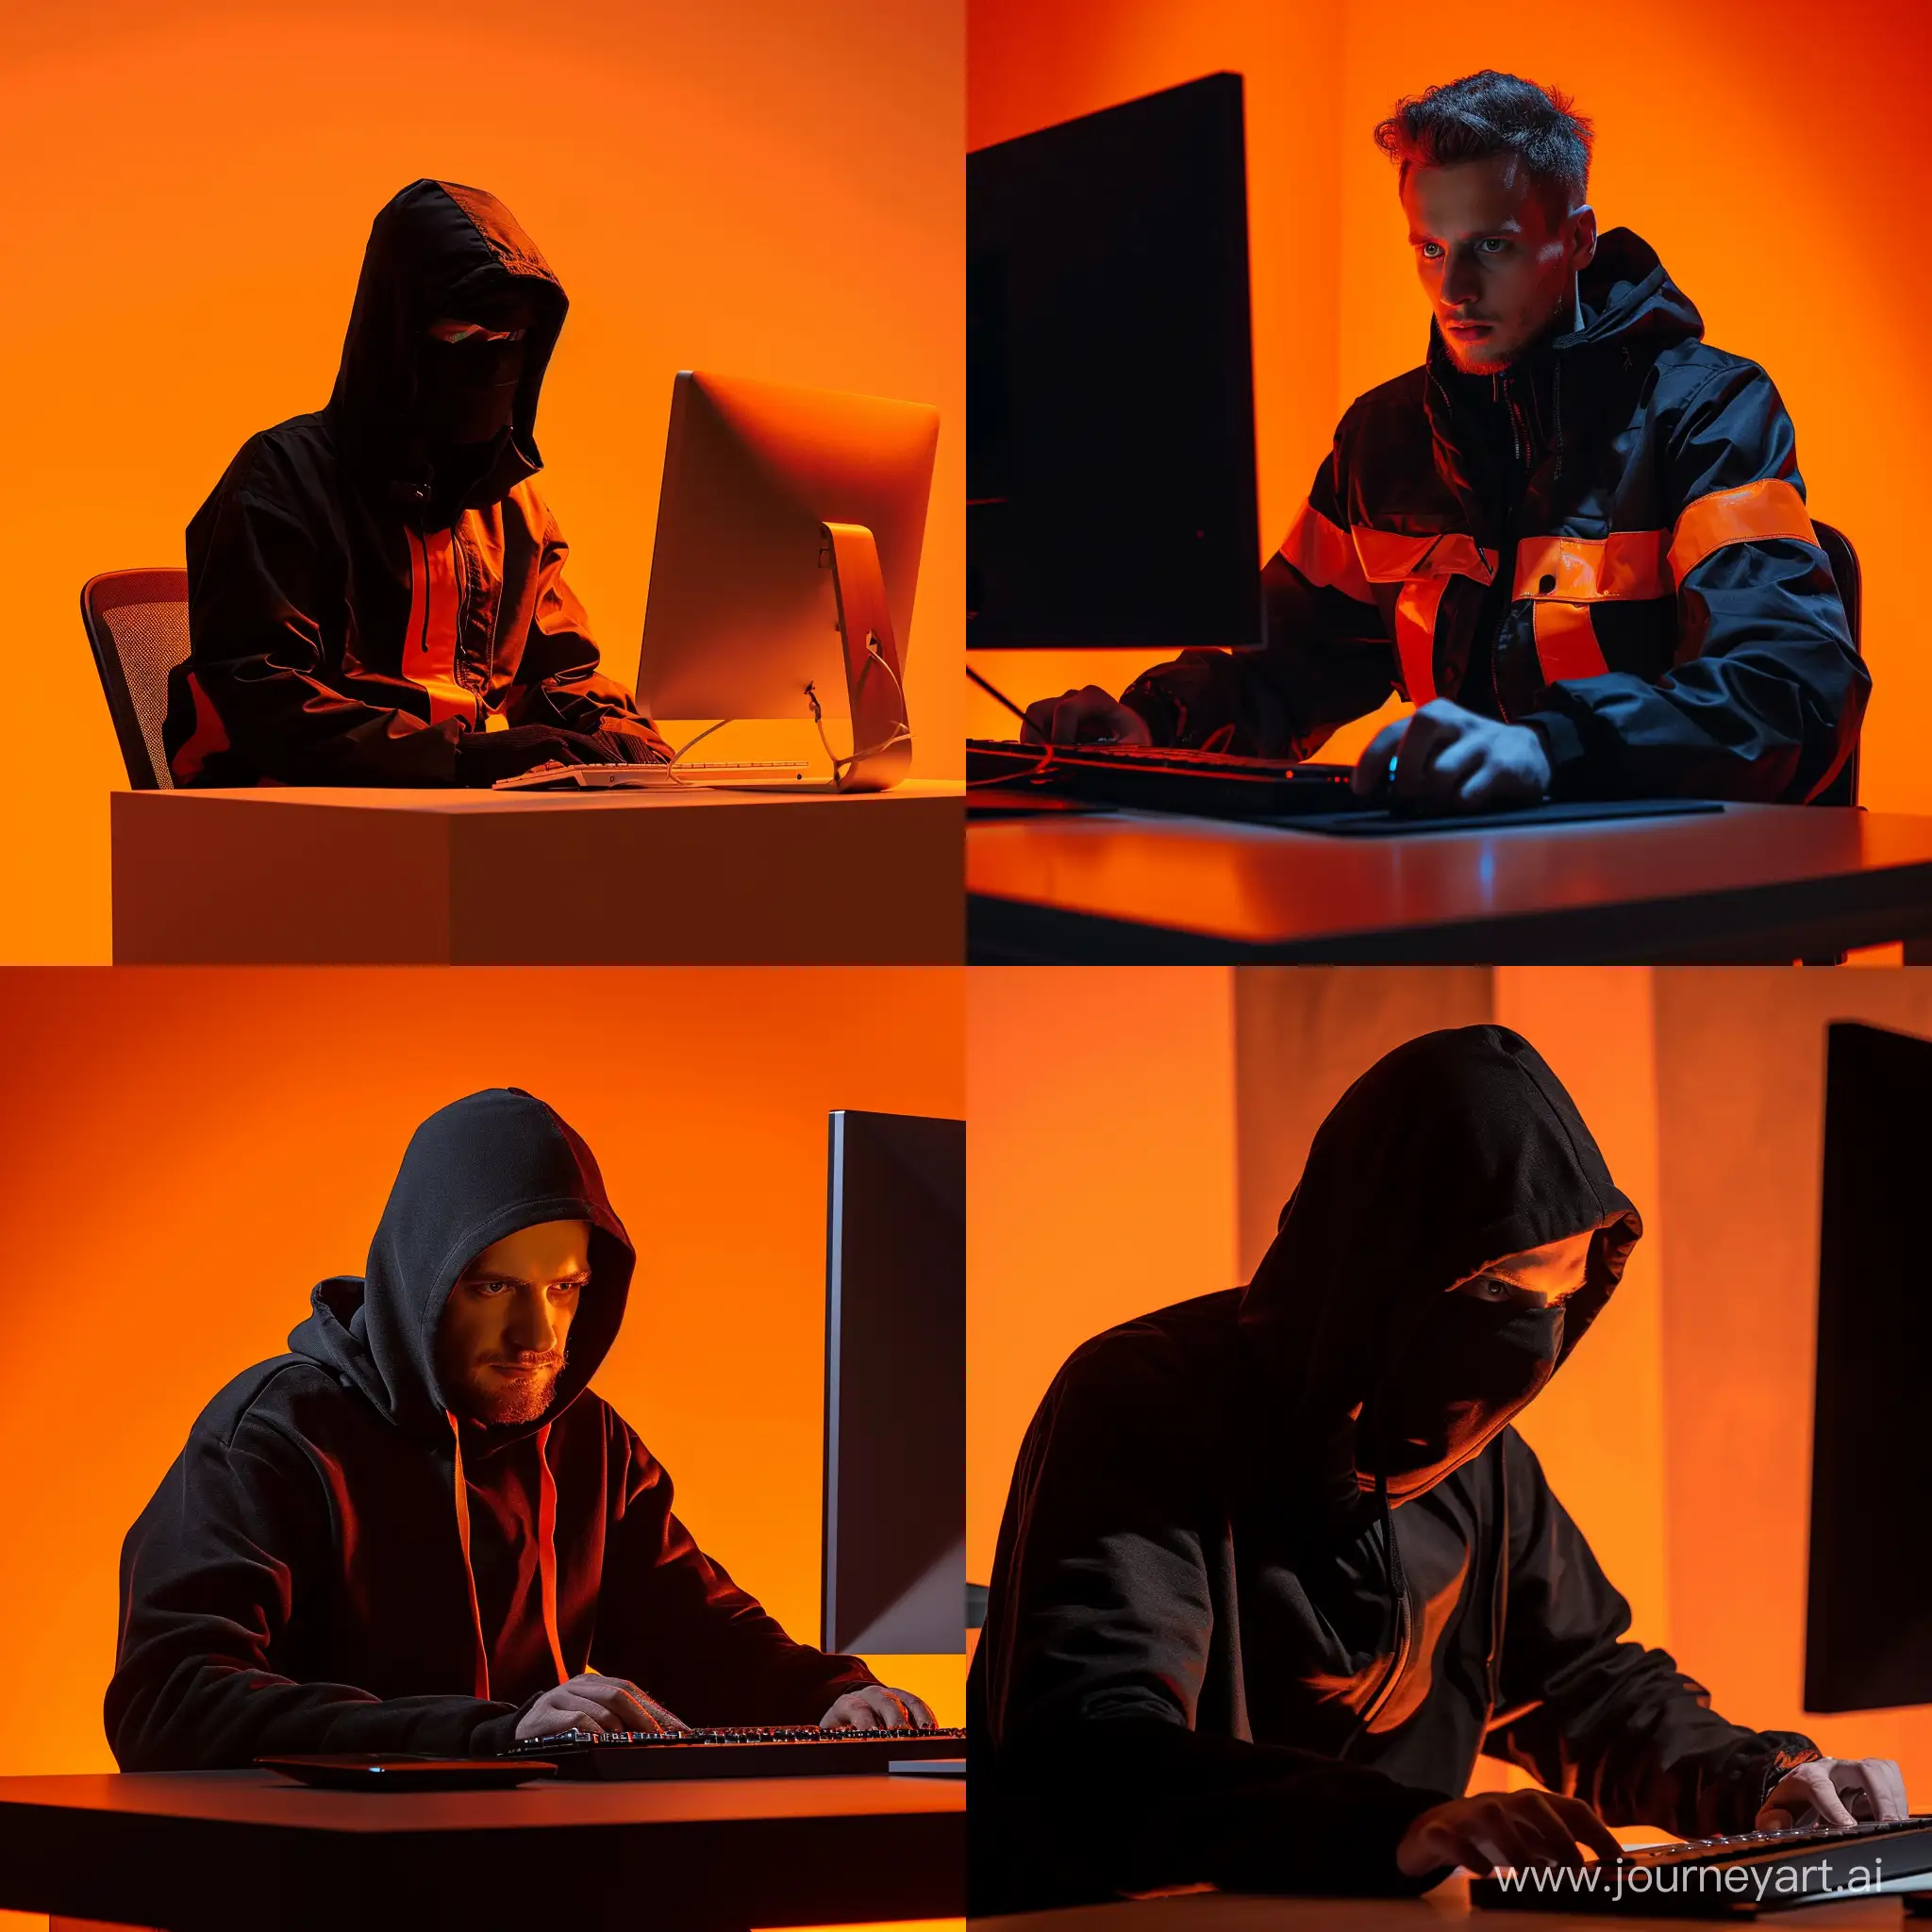 Нелегальный работник одет в чёрно-оранжевое, обманывает людей, сидя за компьютером, при оранжевом освещении